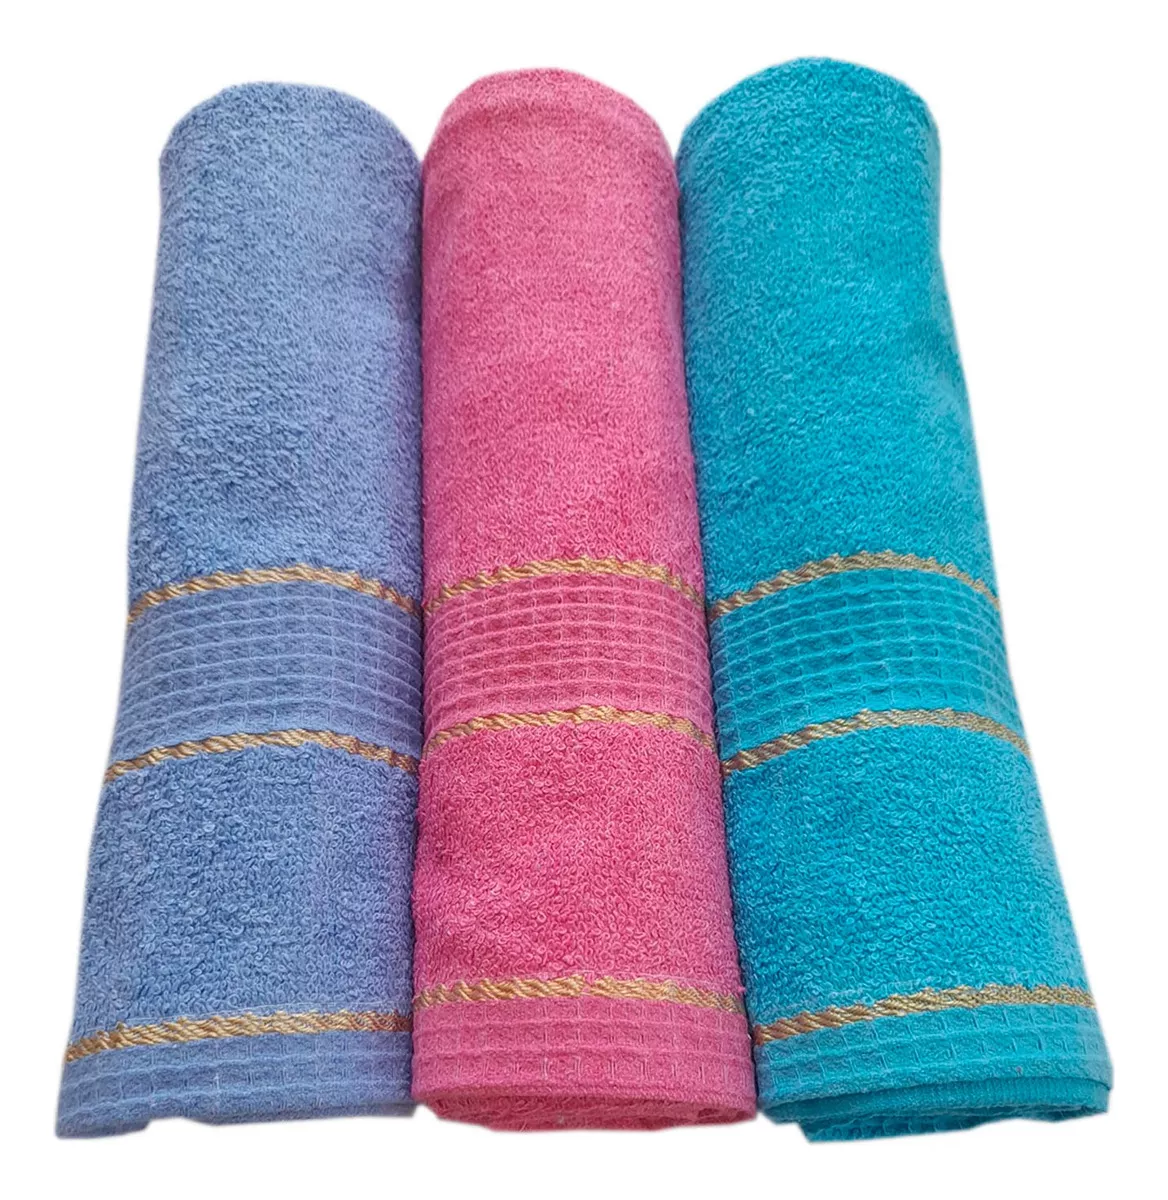 Primera imagen para búsqueda de toallas